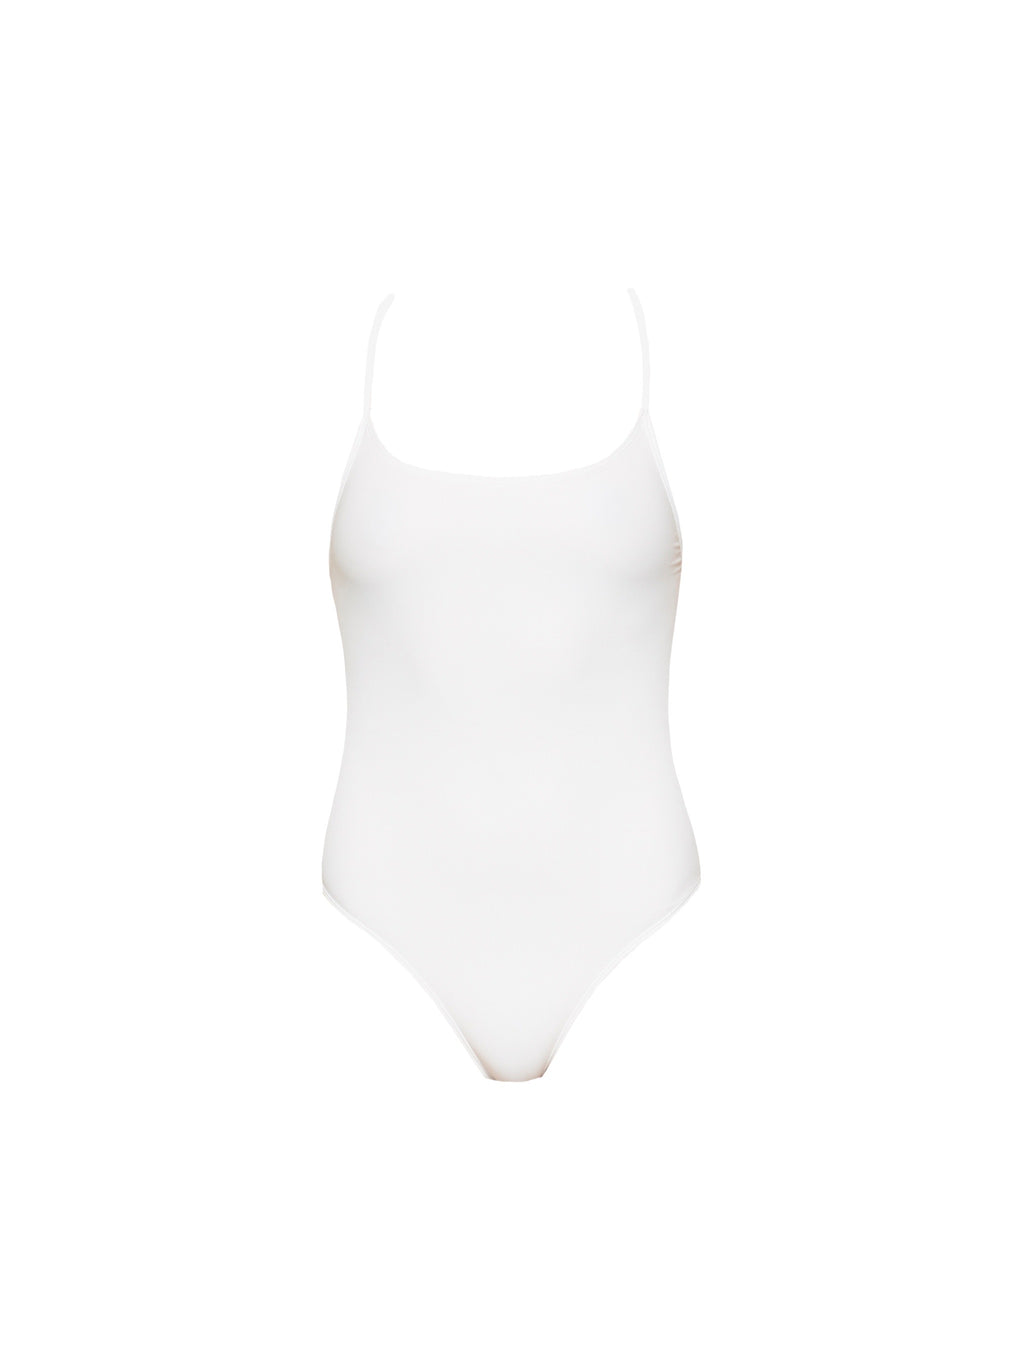 CAPRI Suit - White | Basic Swim